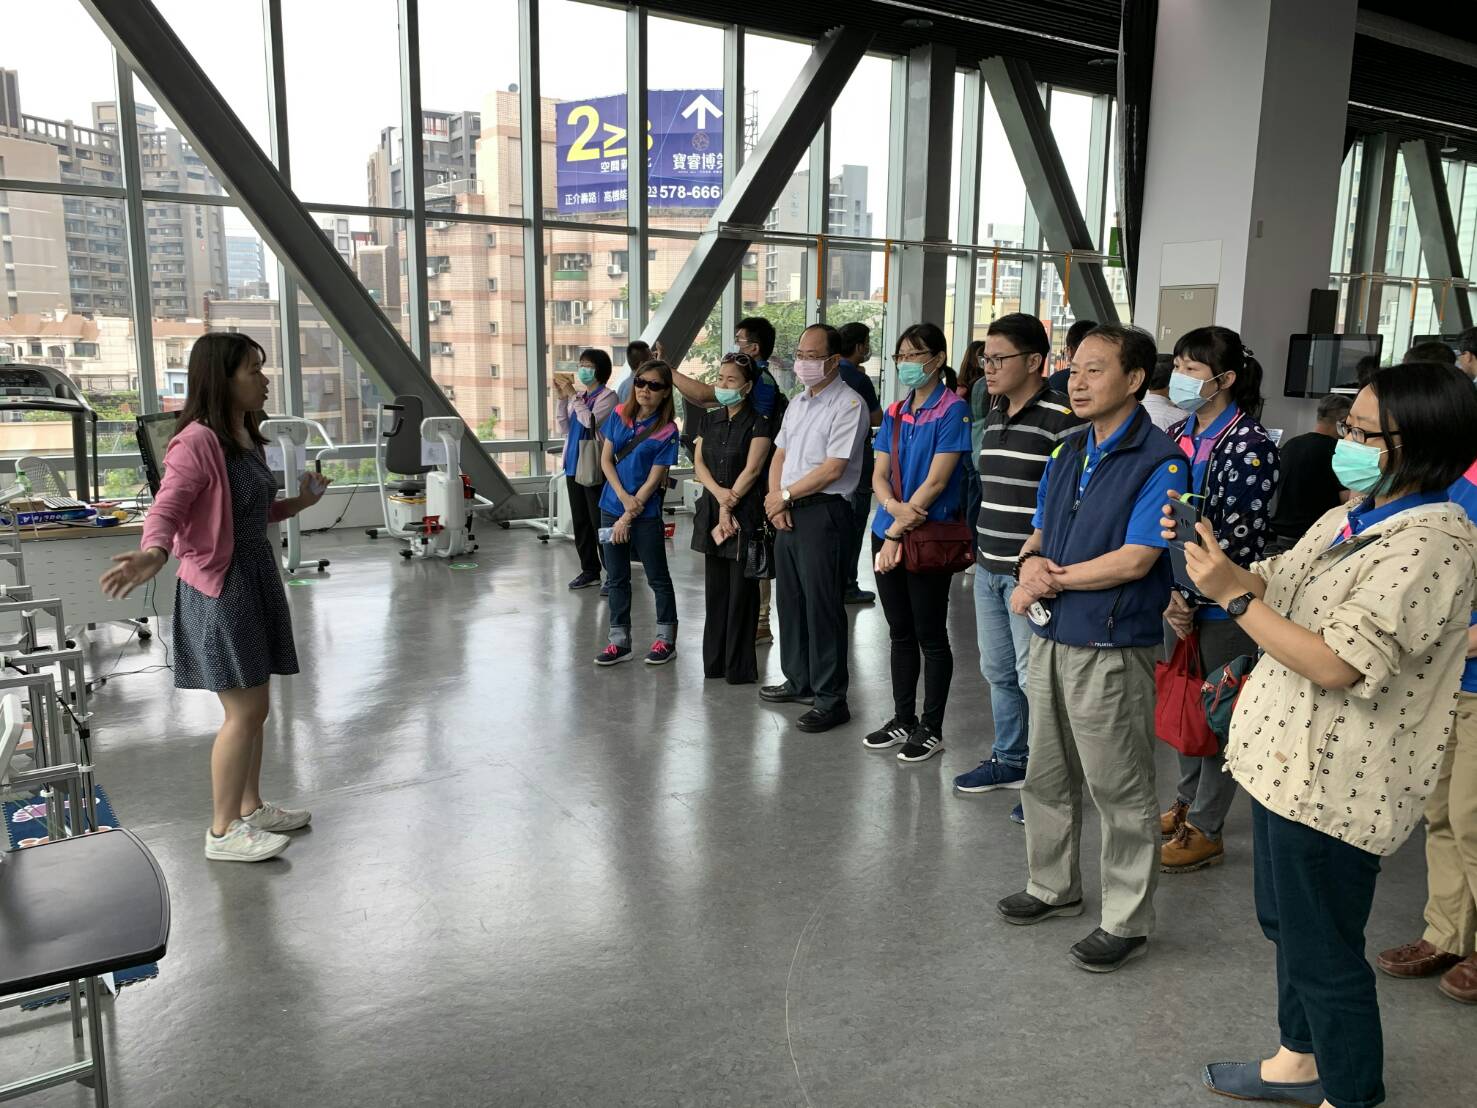 臺南榮家參訪工研院 銀髮智慧照護新體驗